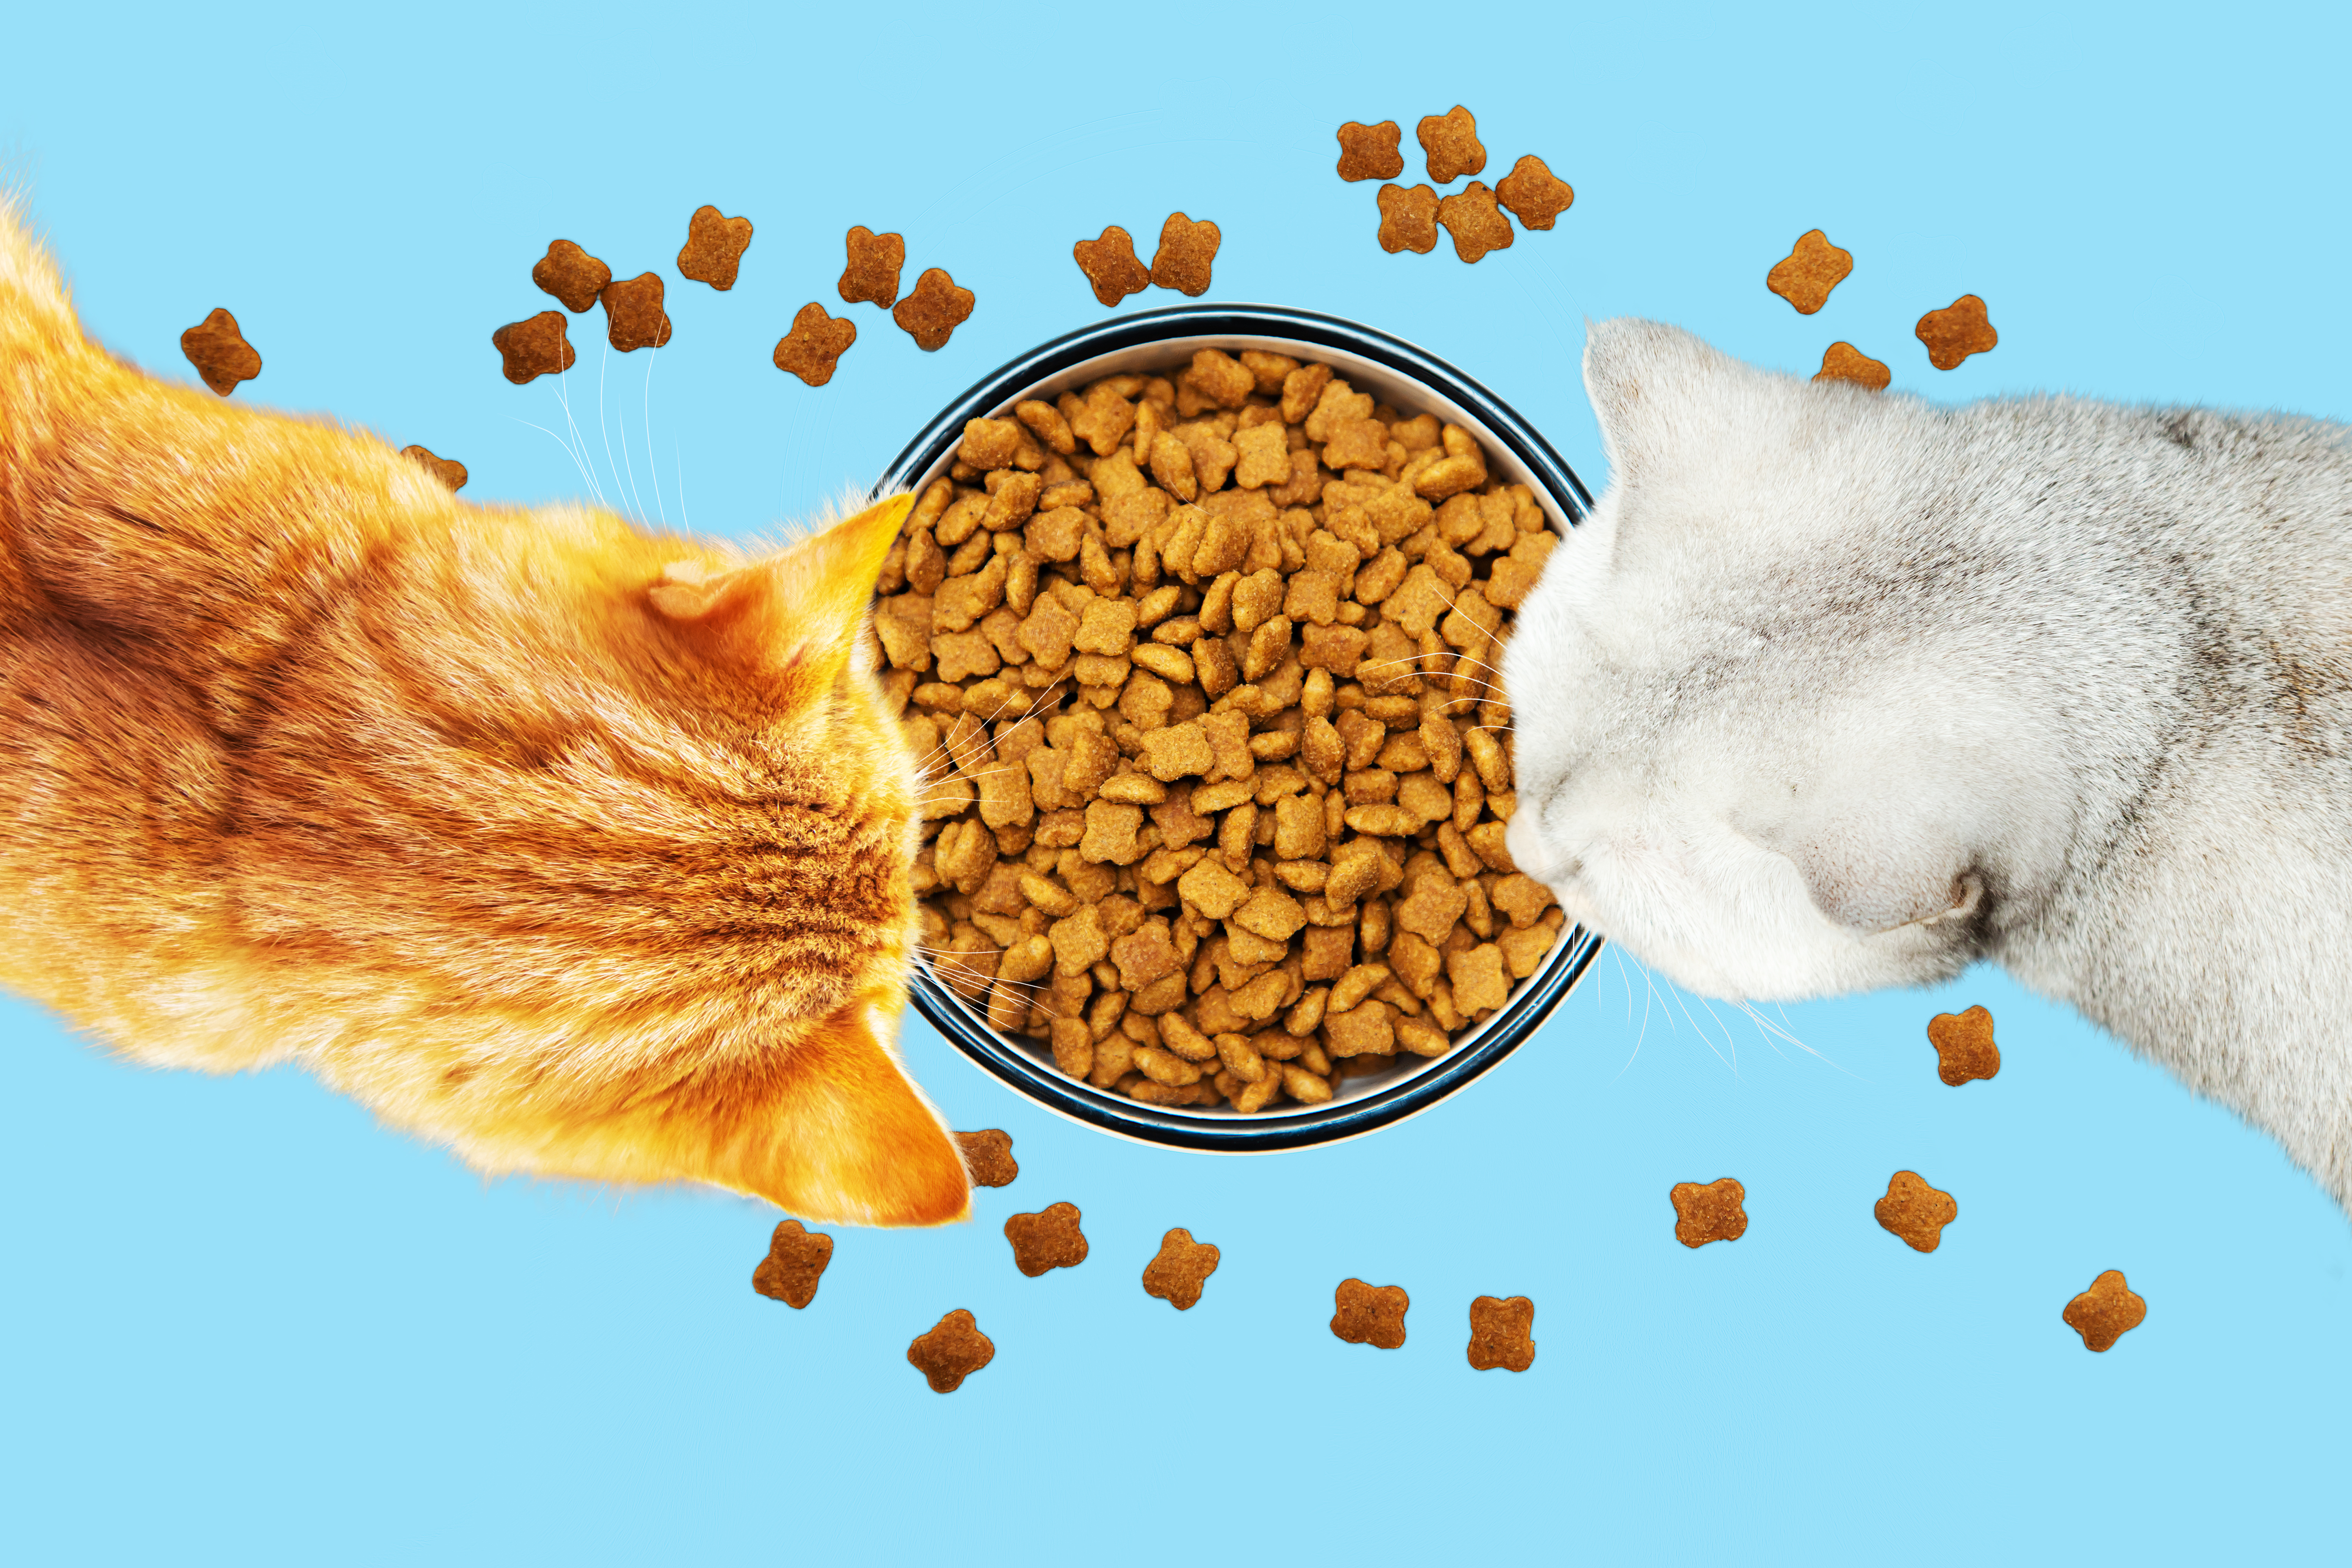 Как правильно смешивать сухой и влажный корм в рационе кошки и собаки?